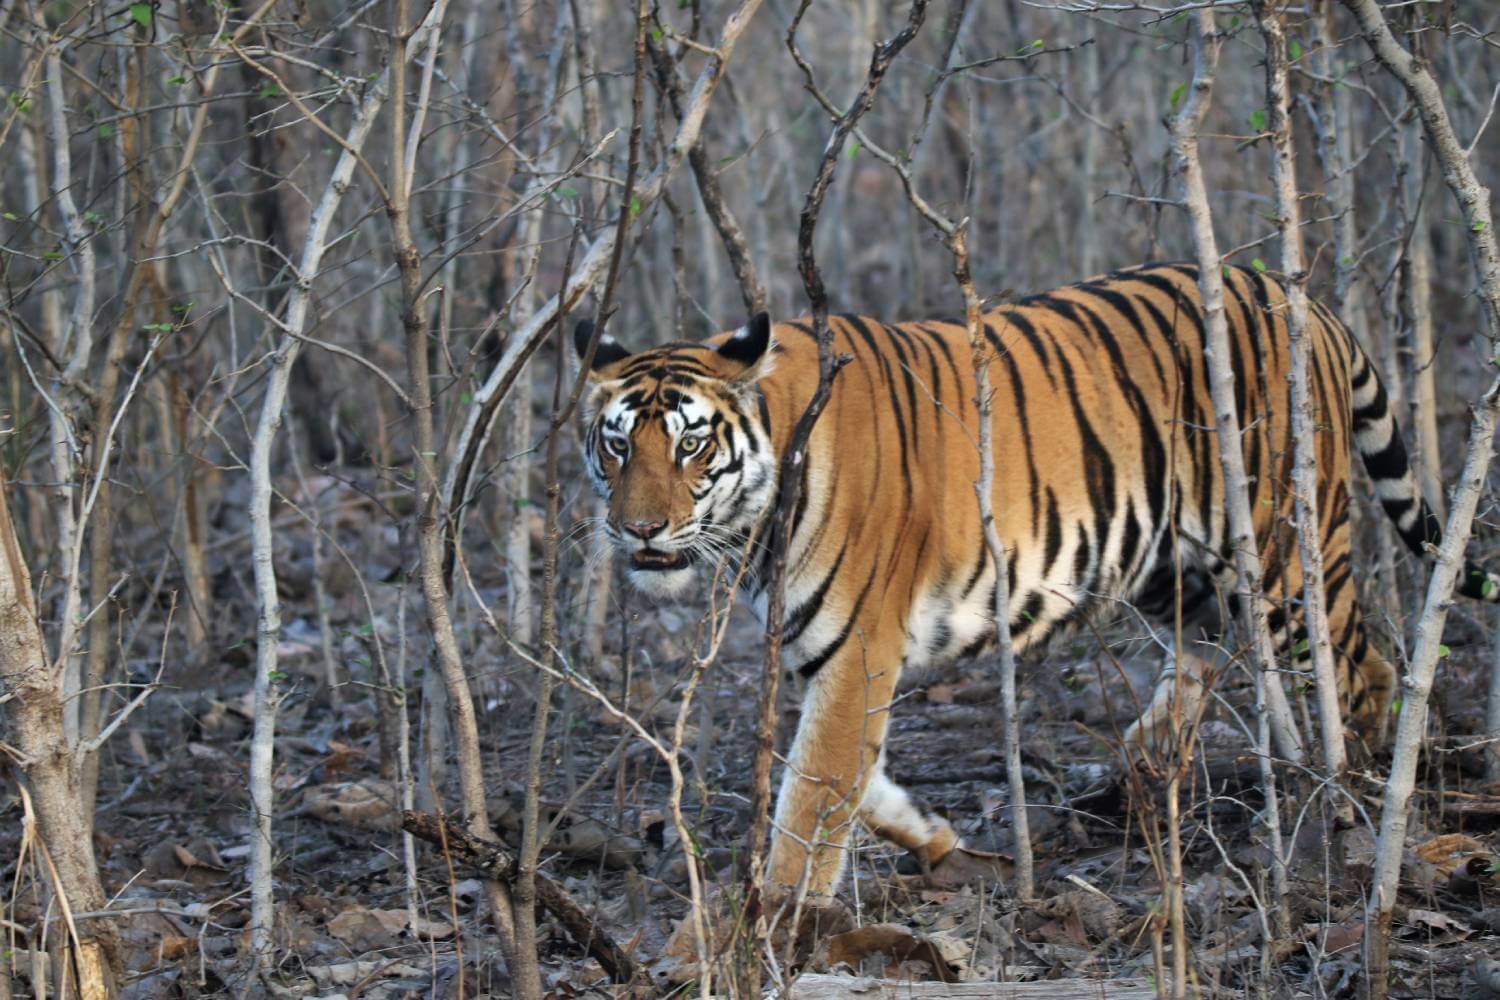 Tigress Panna National Park